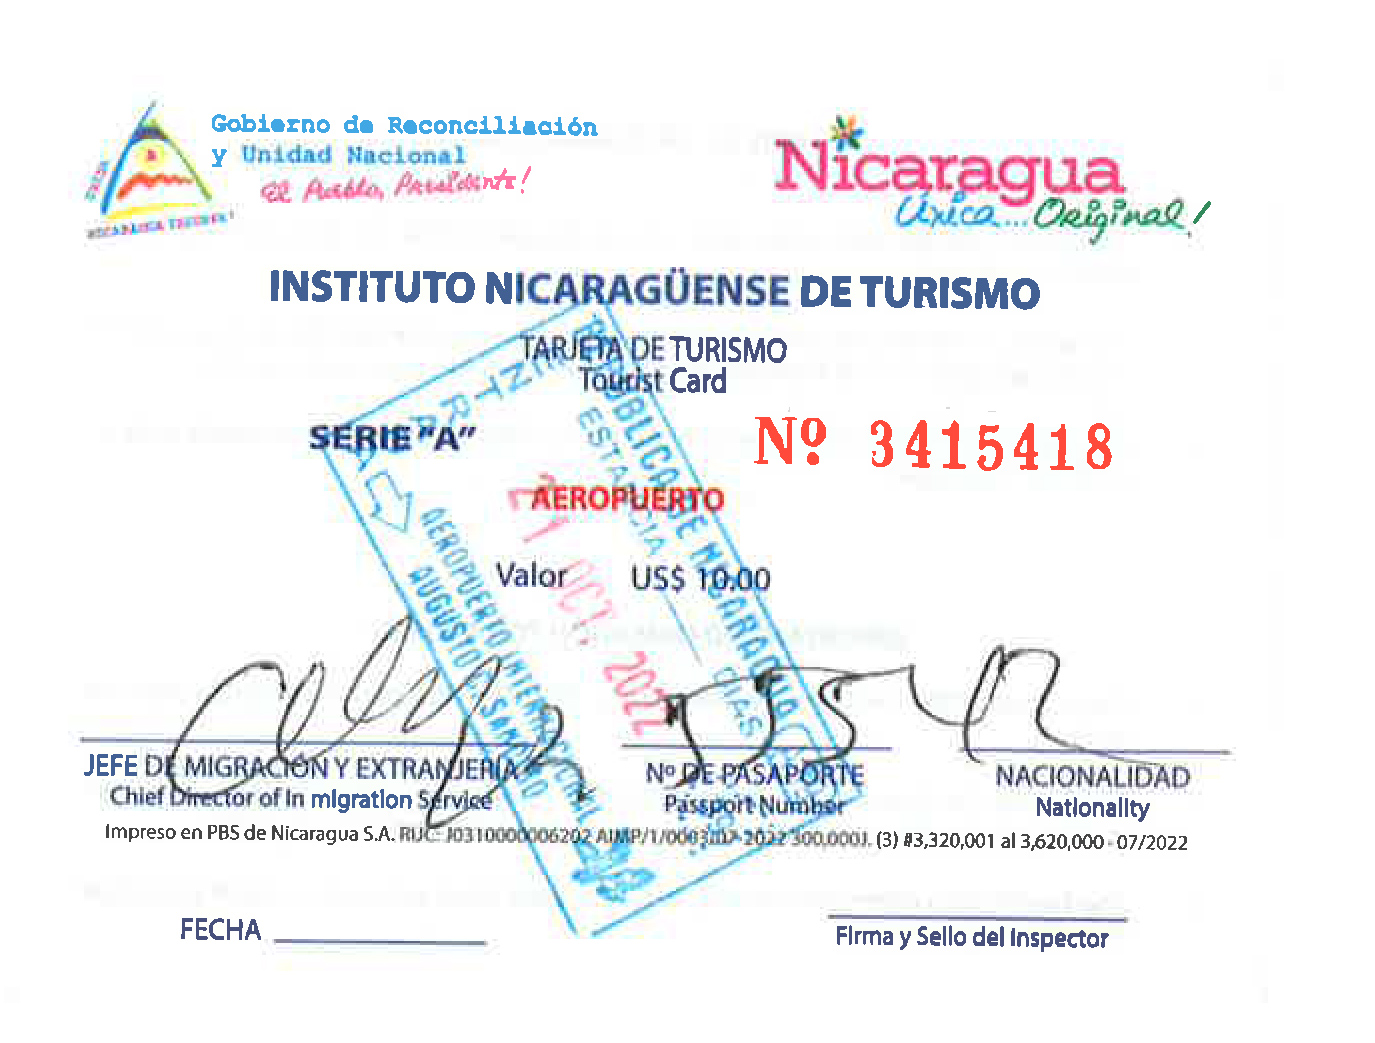 Tourist card for Nicaragua.